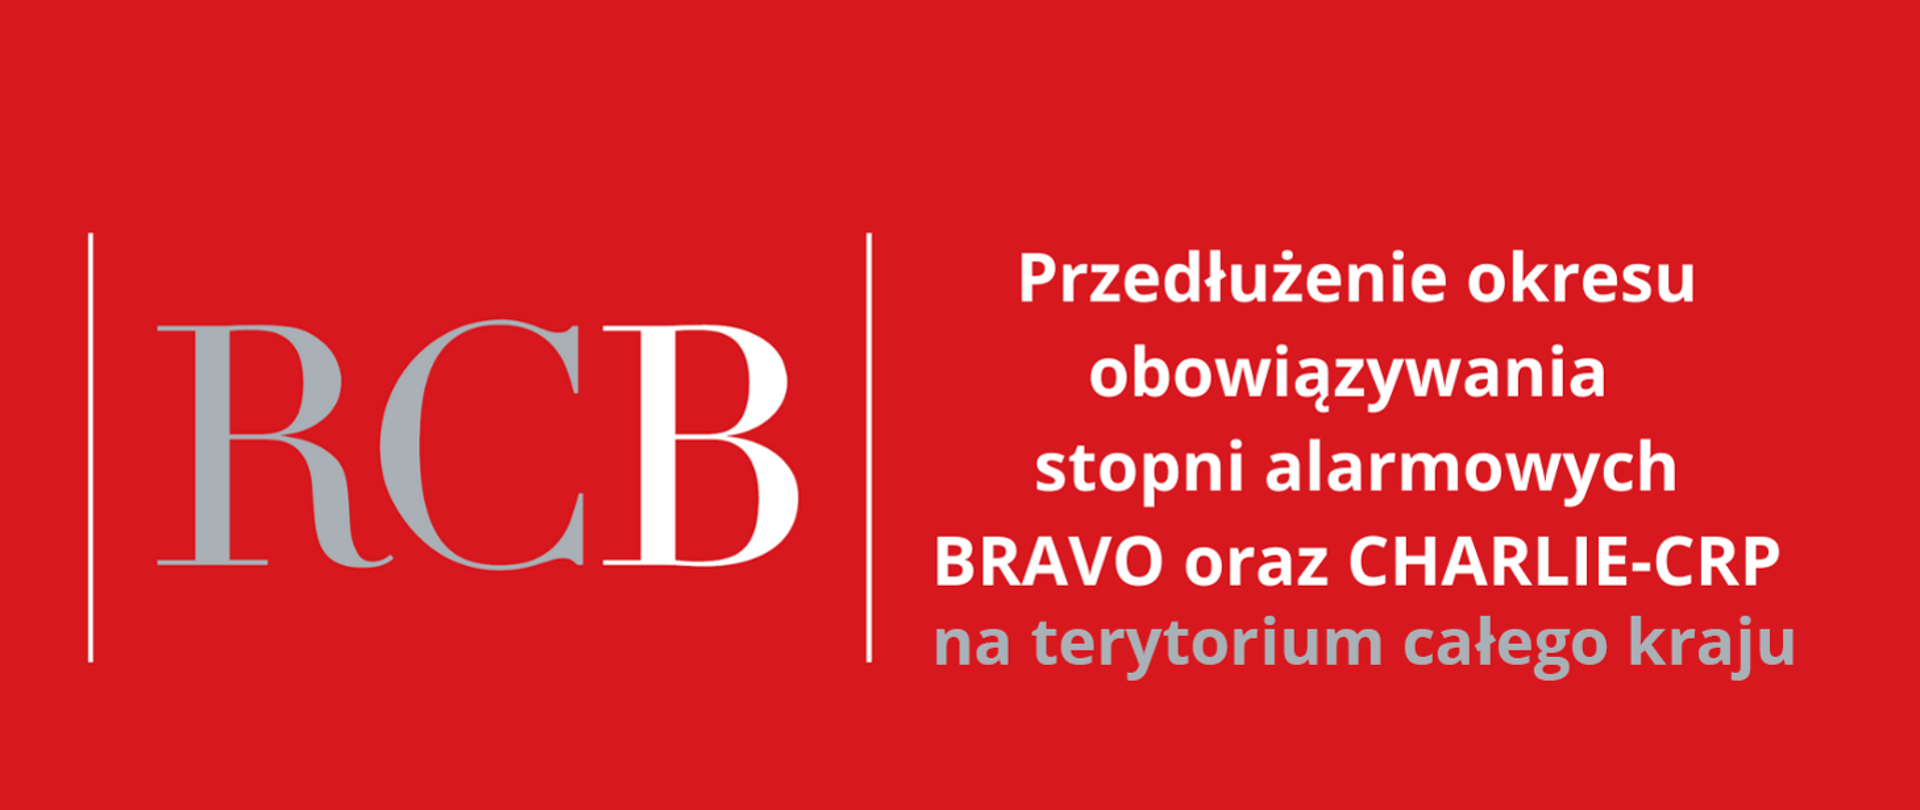 Przedłużenie stopni alarmowych BRAVO oraz CHARLIE-CRP - do 31maja 2023, czerwone tło, z napisem w kolorze białym i srebrnym